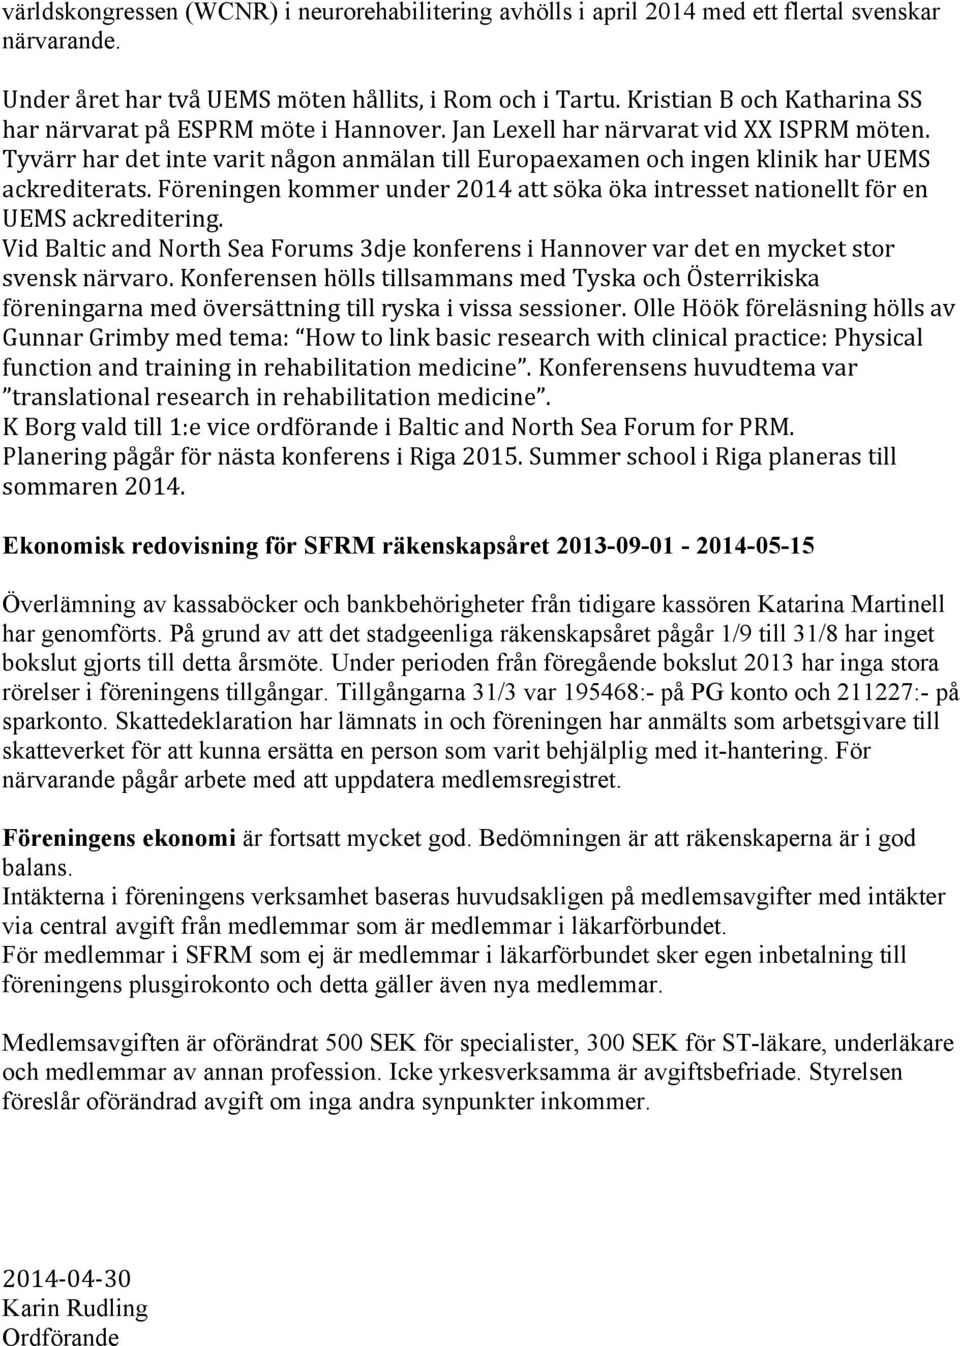 Tyvärr har det inte varit någon anmälan till Europaexamen och ingen klinik har UEMS ackrediterats. Föreningen kommer under 2014 att söka öka intresset nationellt för en UEMS ackreditering.